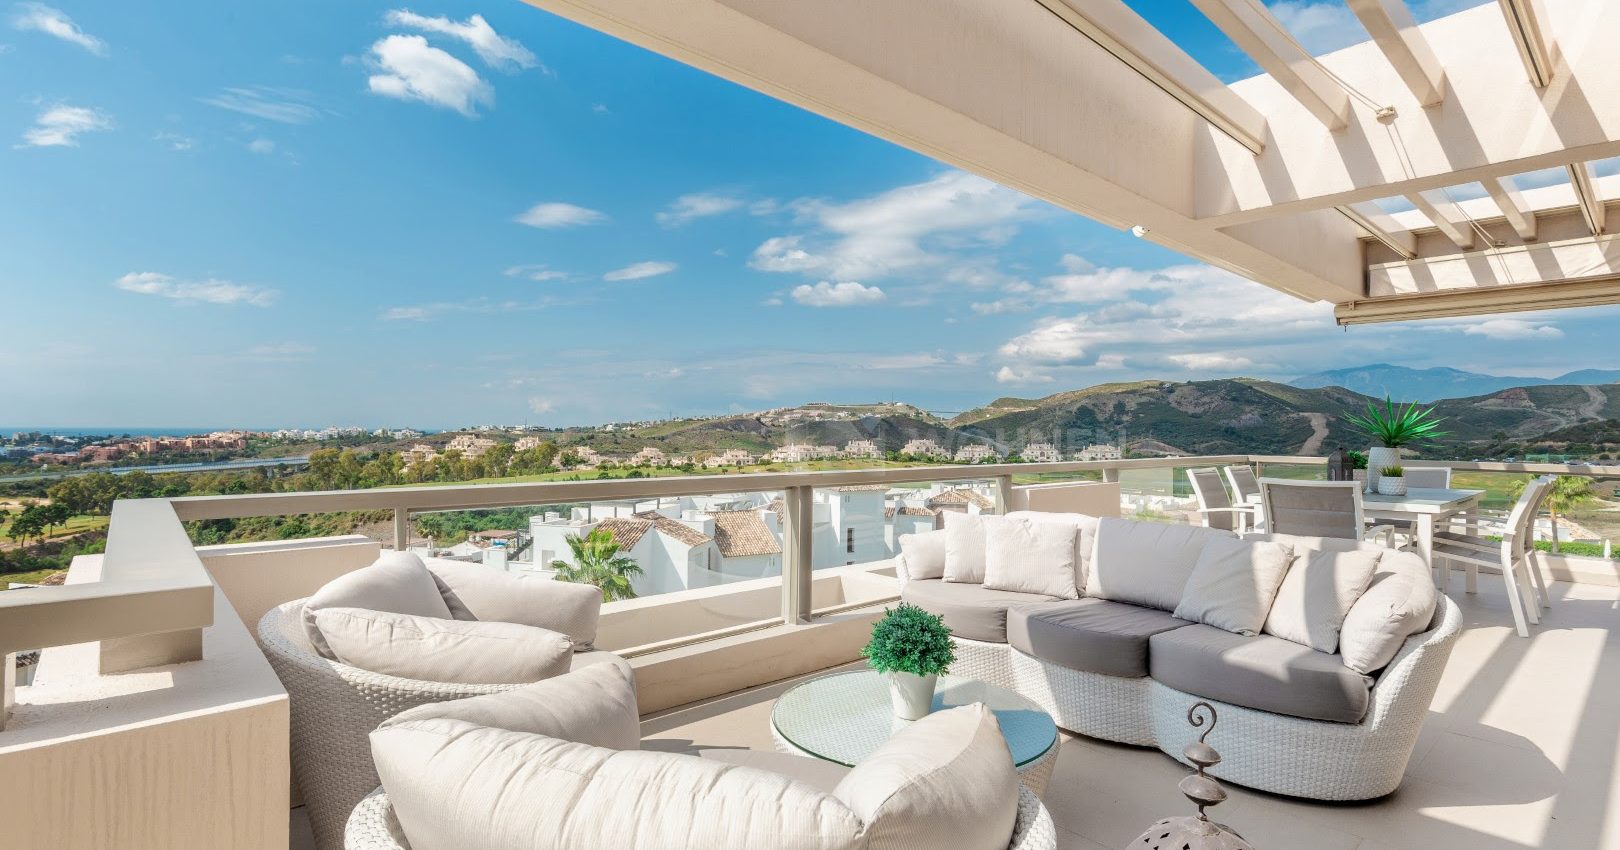 Apartamento moderno con impresionantes vistas al golf, mar y montaña